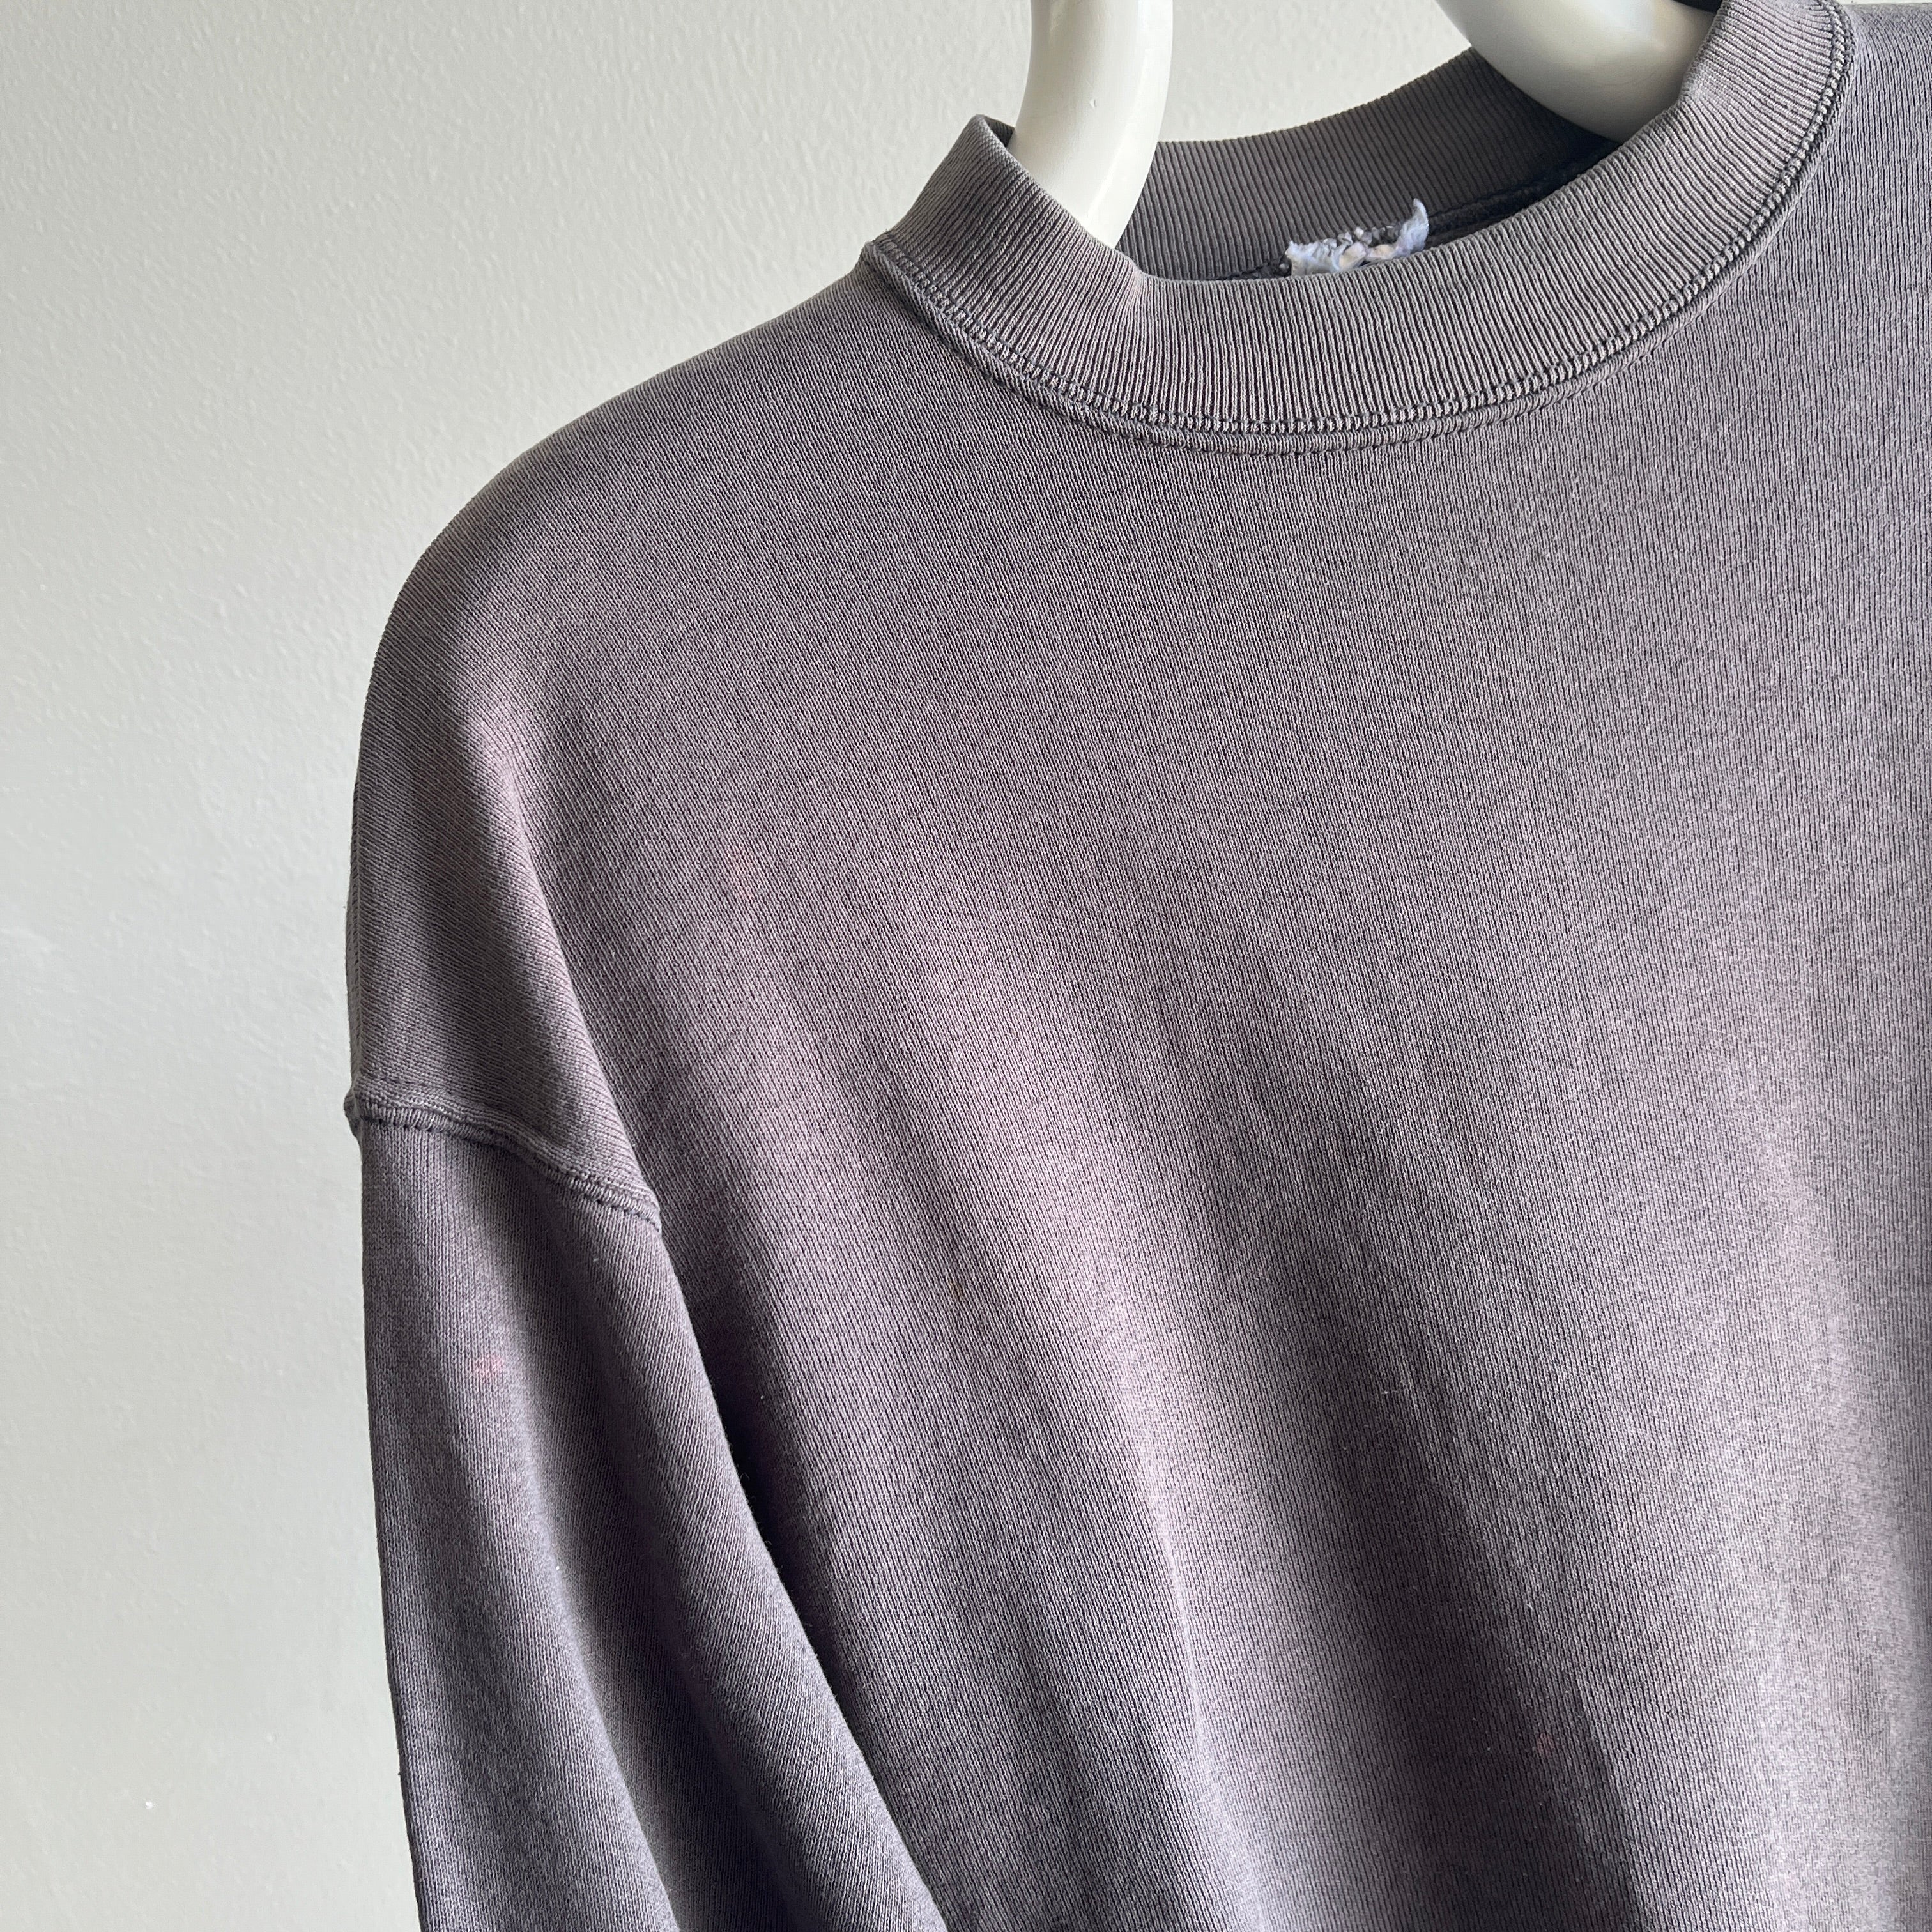 Sweat-shirt gris foncé joliment taché et usé des années 1990